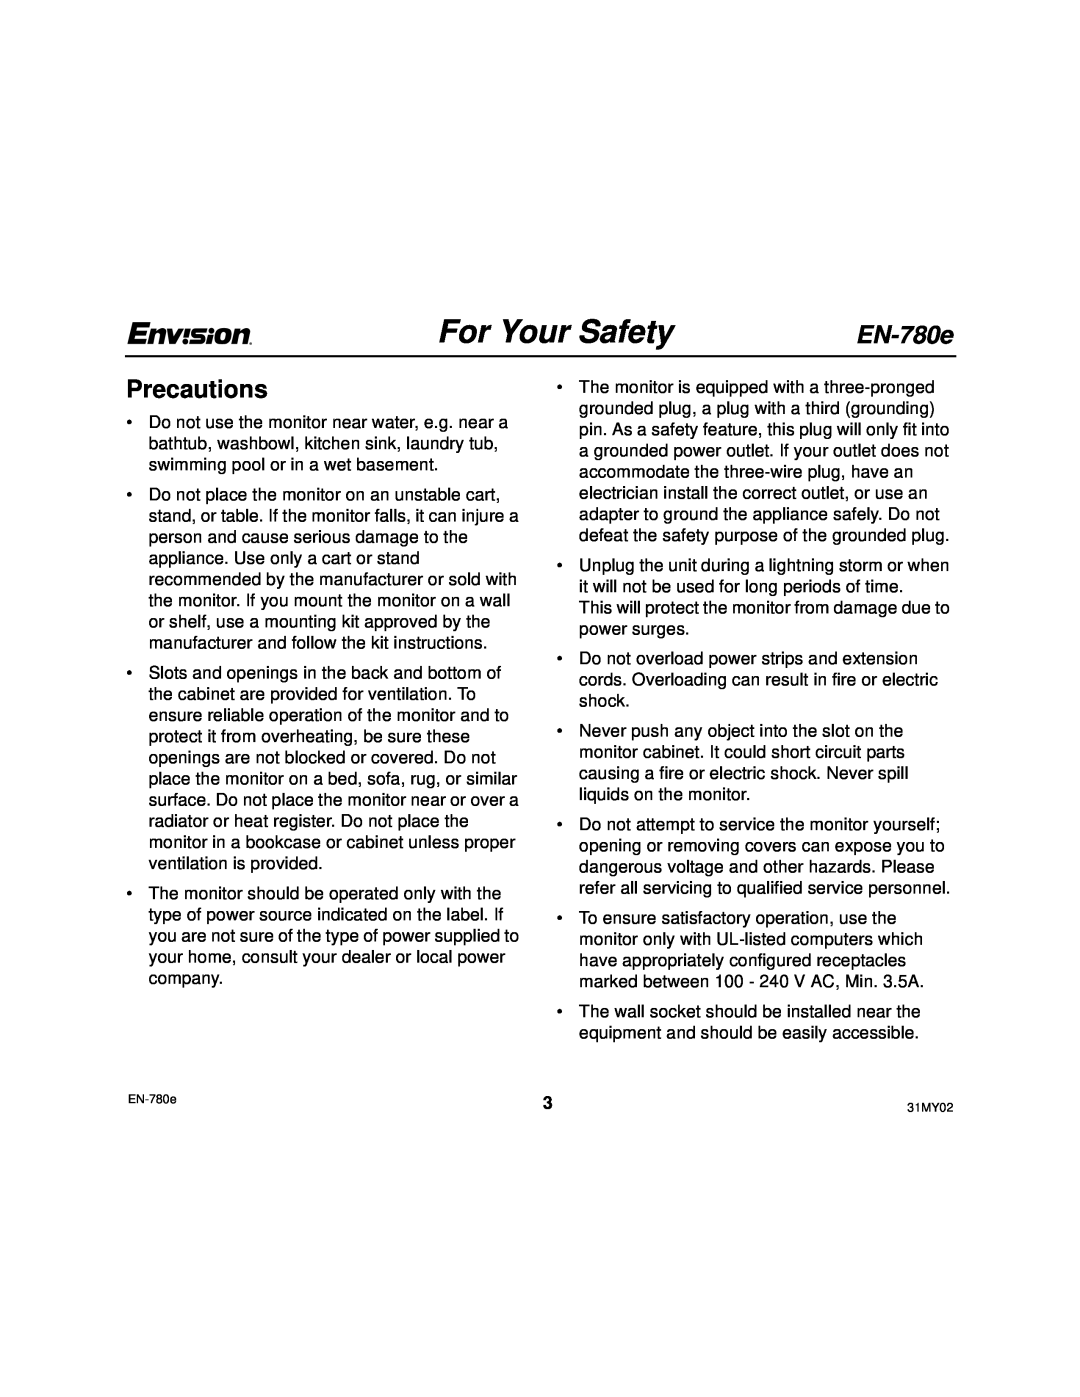 Envision Peripherals EN-780e 17, EN-780e_31MY02 user manual Precautions, For Your Safety 